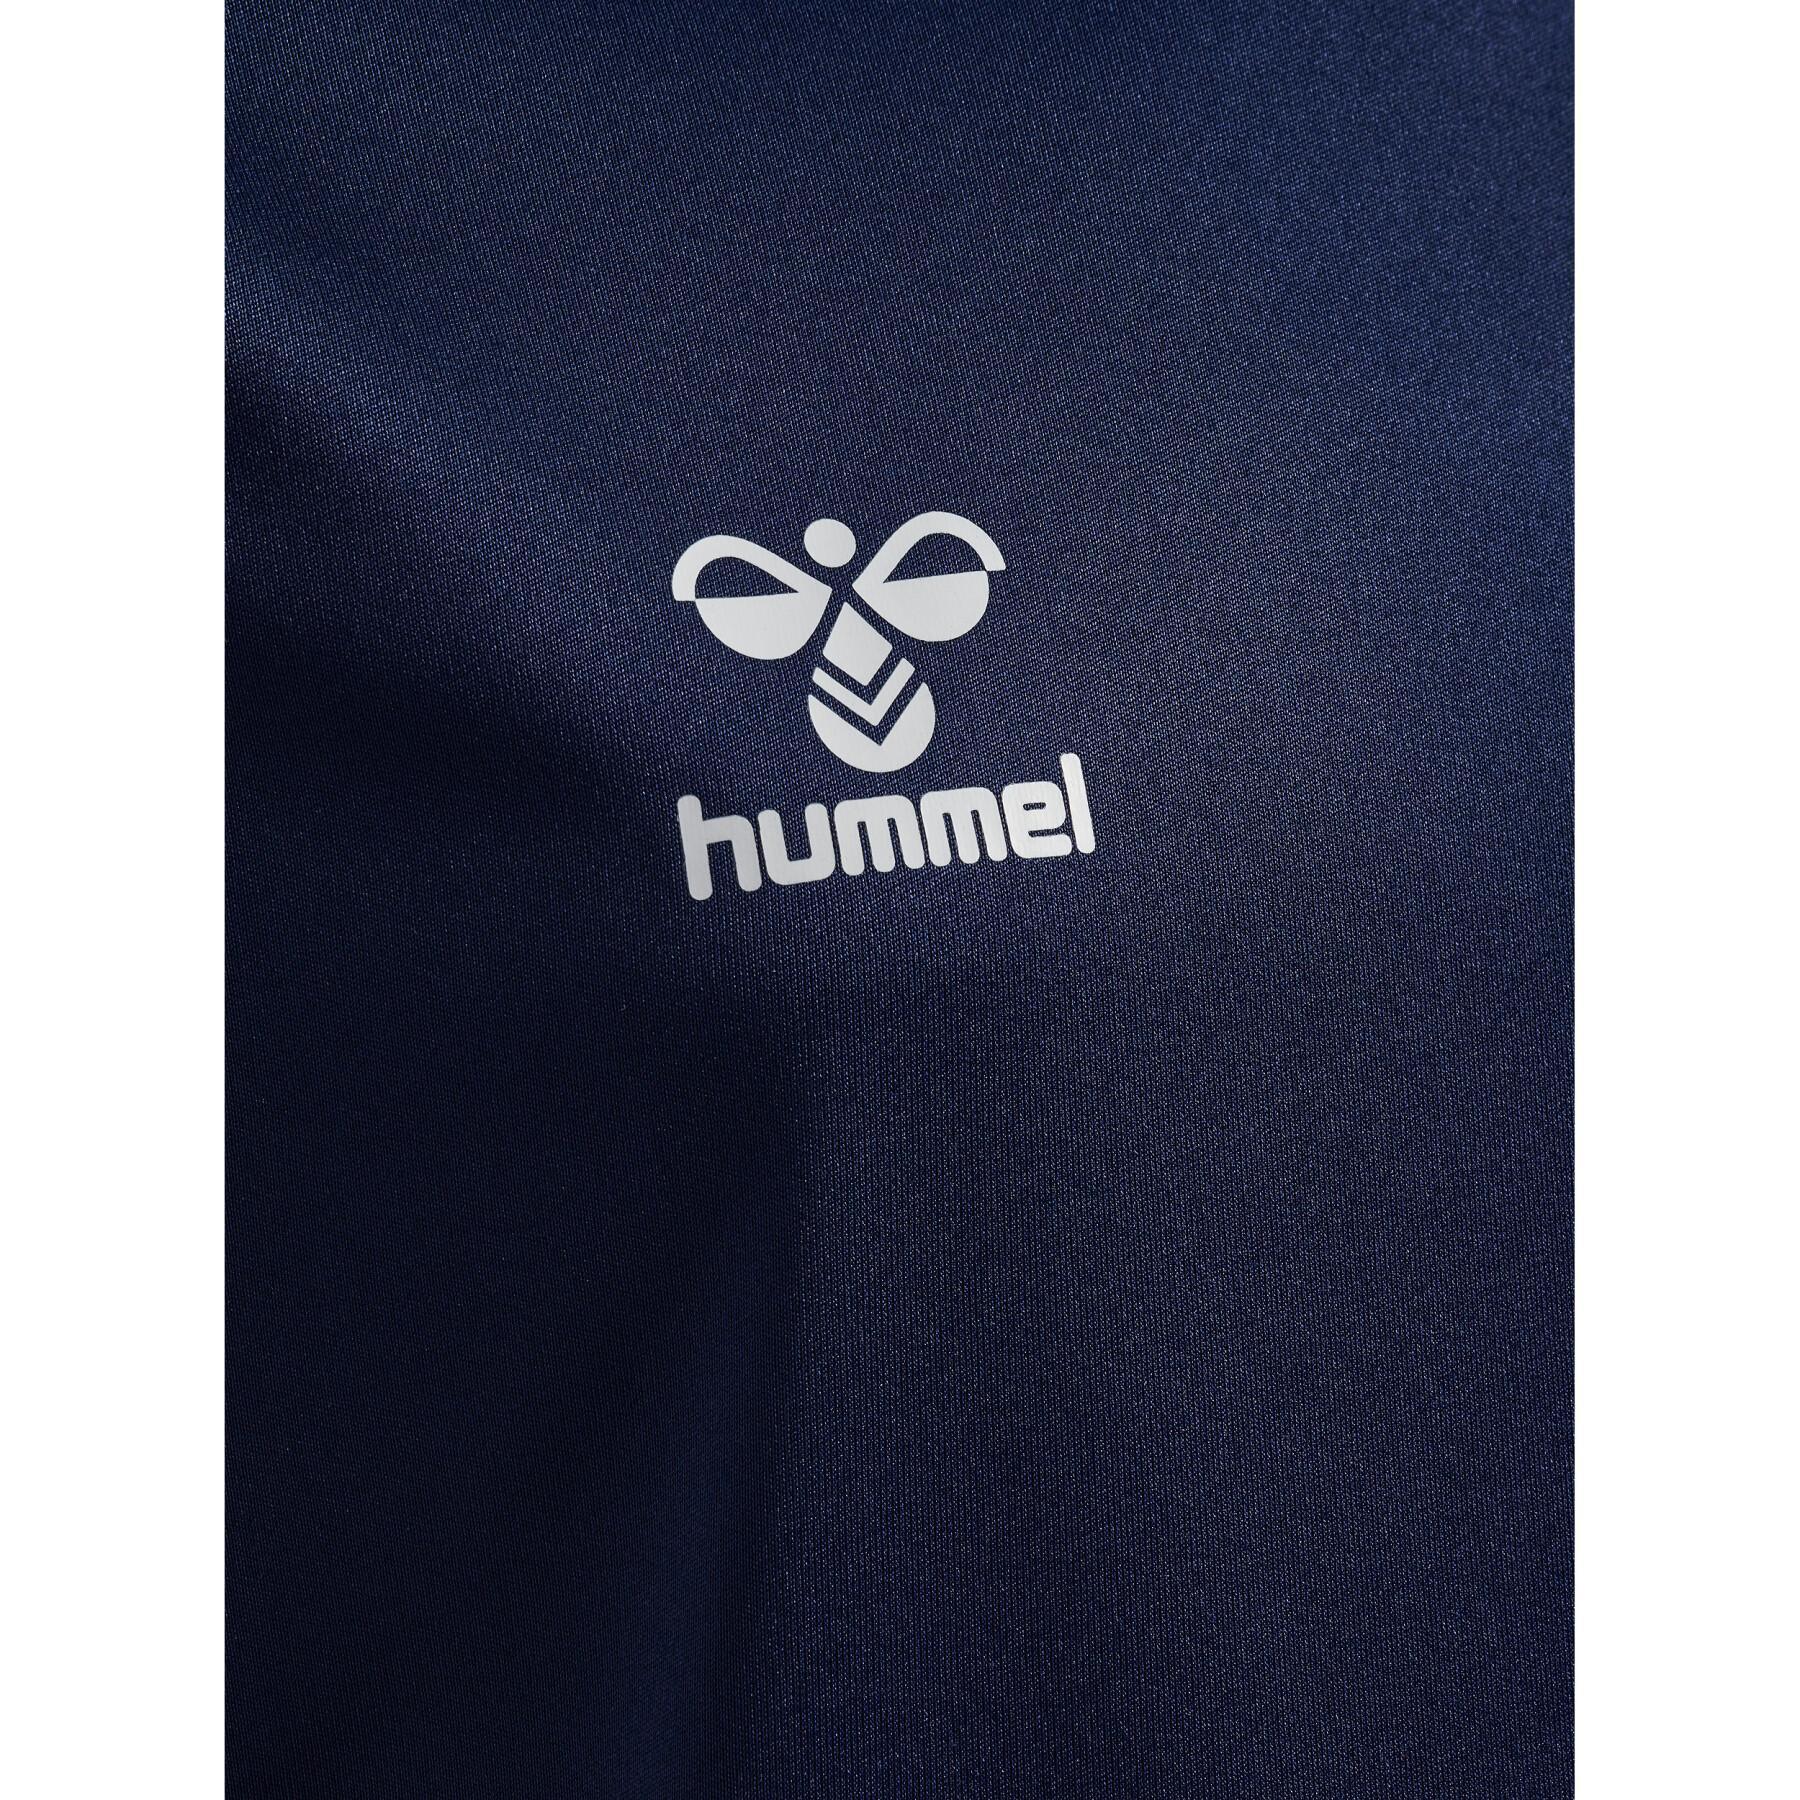 Camiseta esencial infantil Hummel